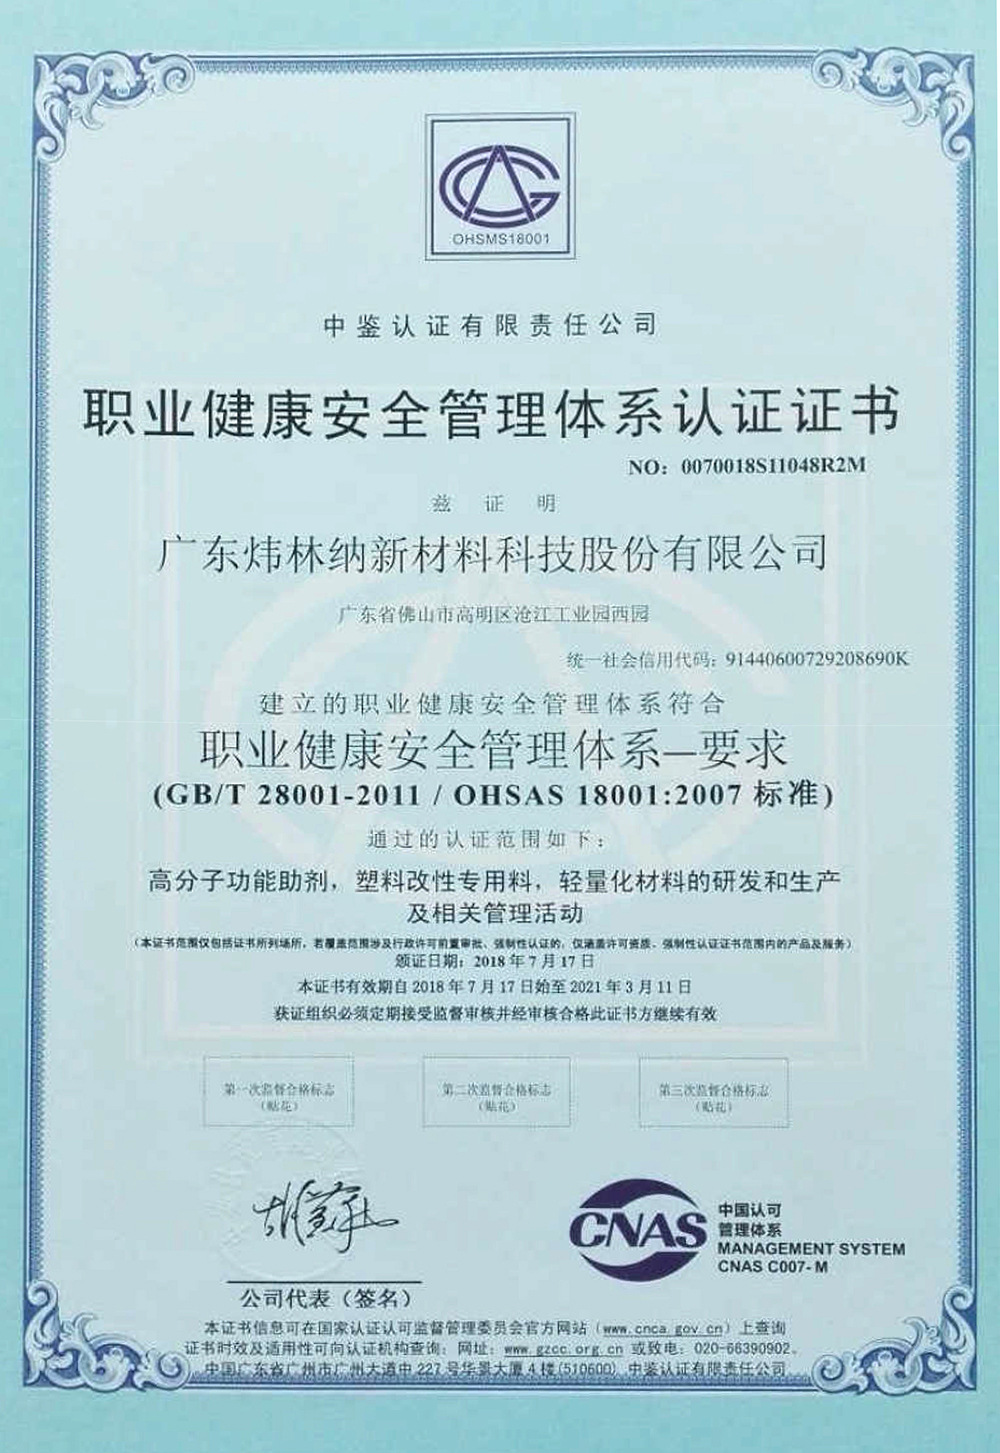 职业健康安全管理体系证书（中文） (20969)绿色边框.j